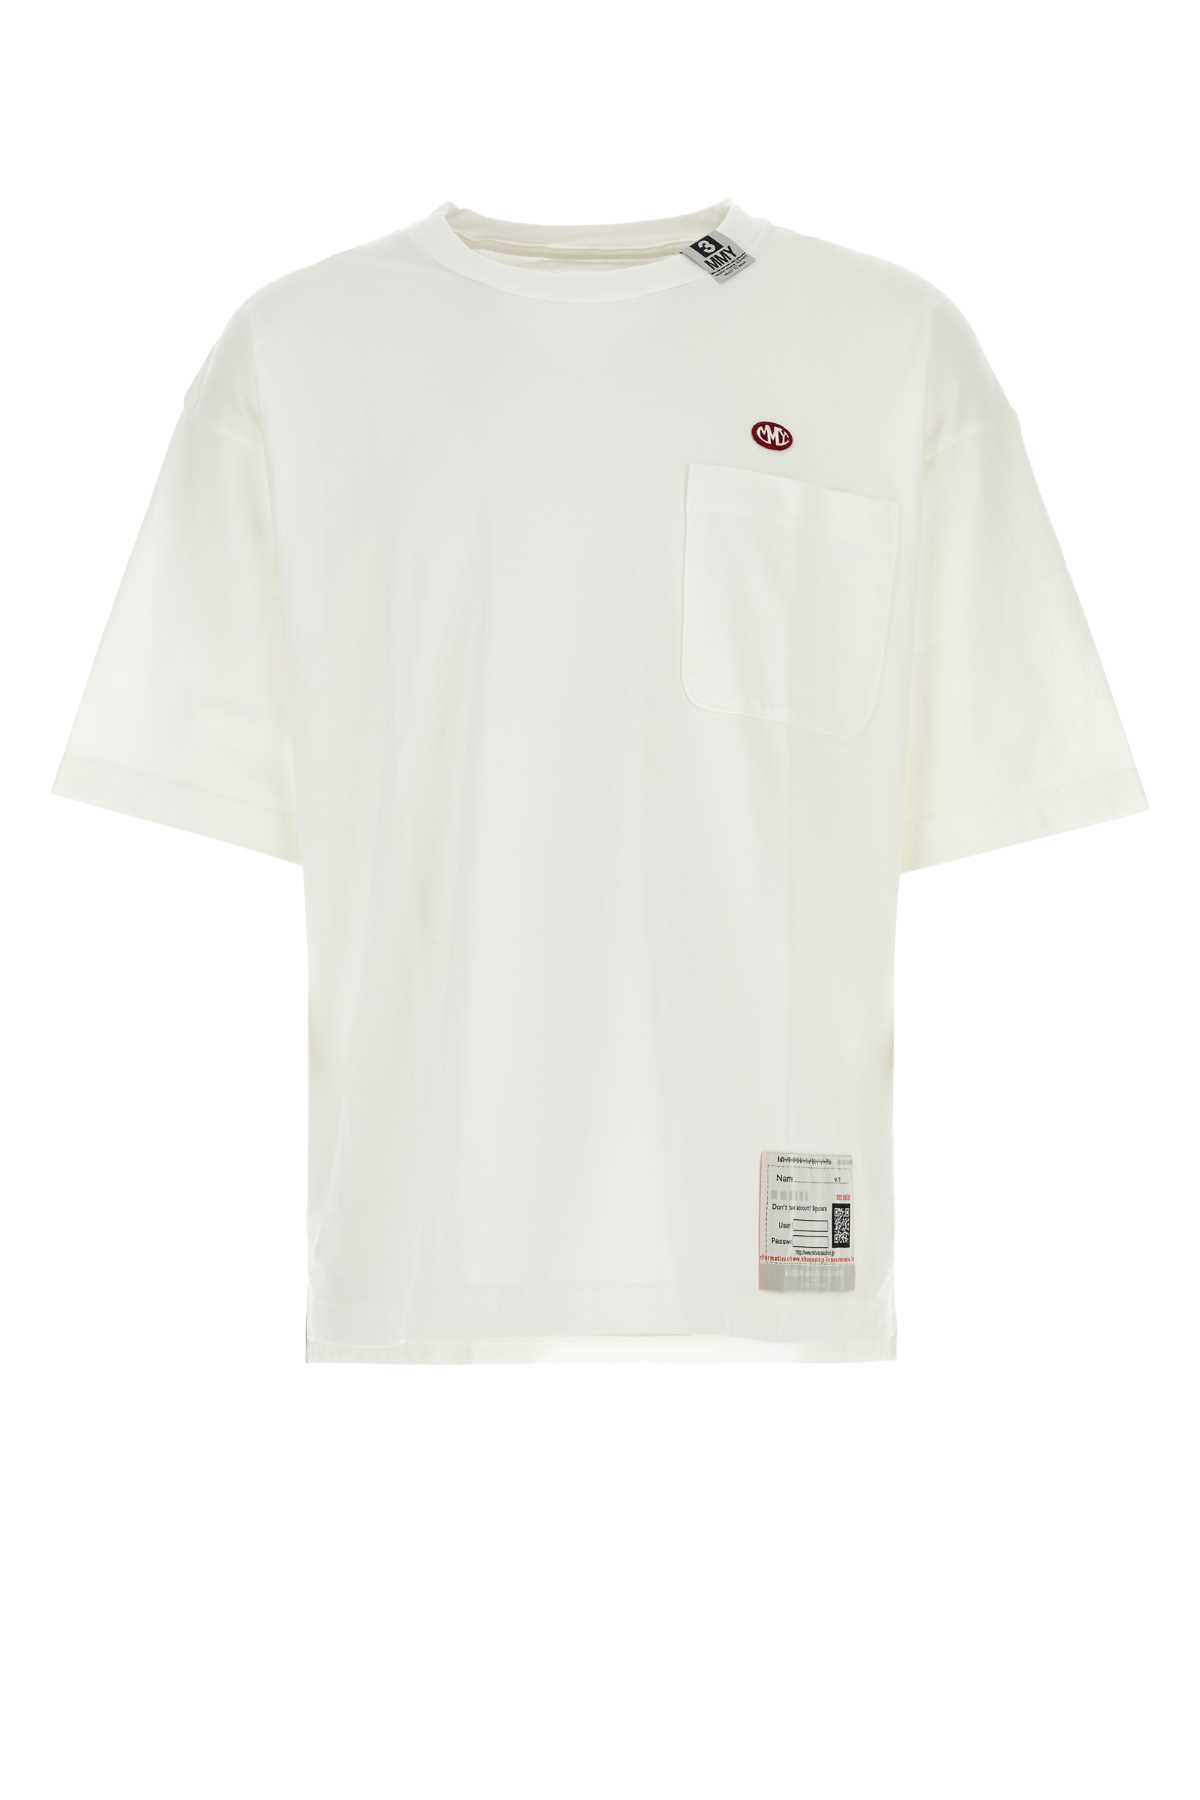 Shop Miharayasuhiro White Cotton T-shirt